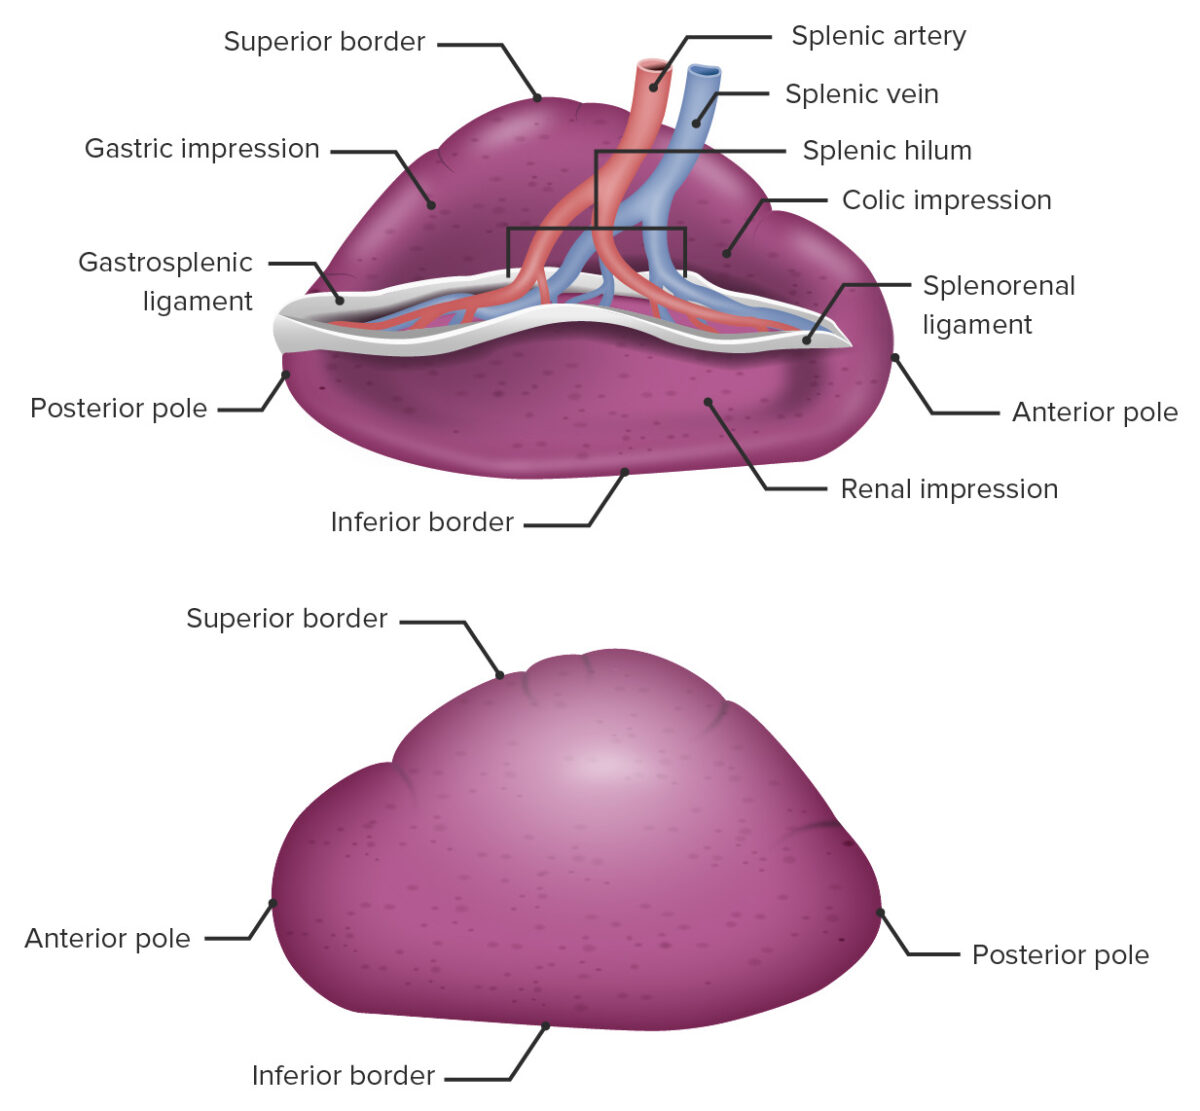 Anatomia macroscópica do baço